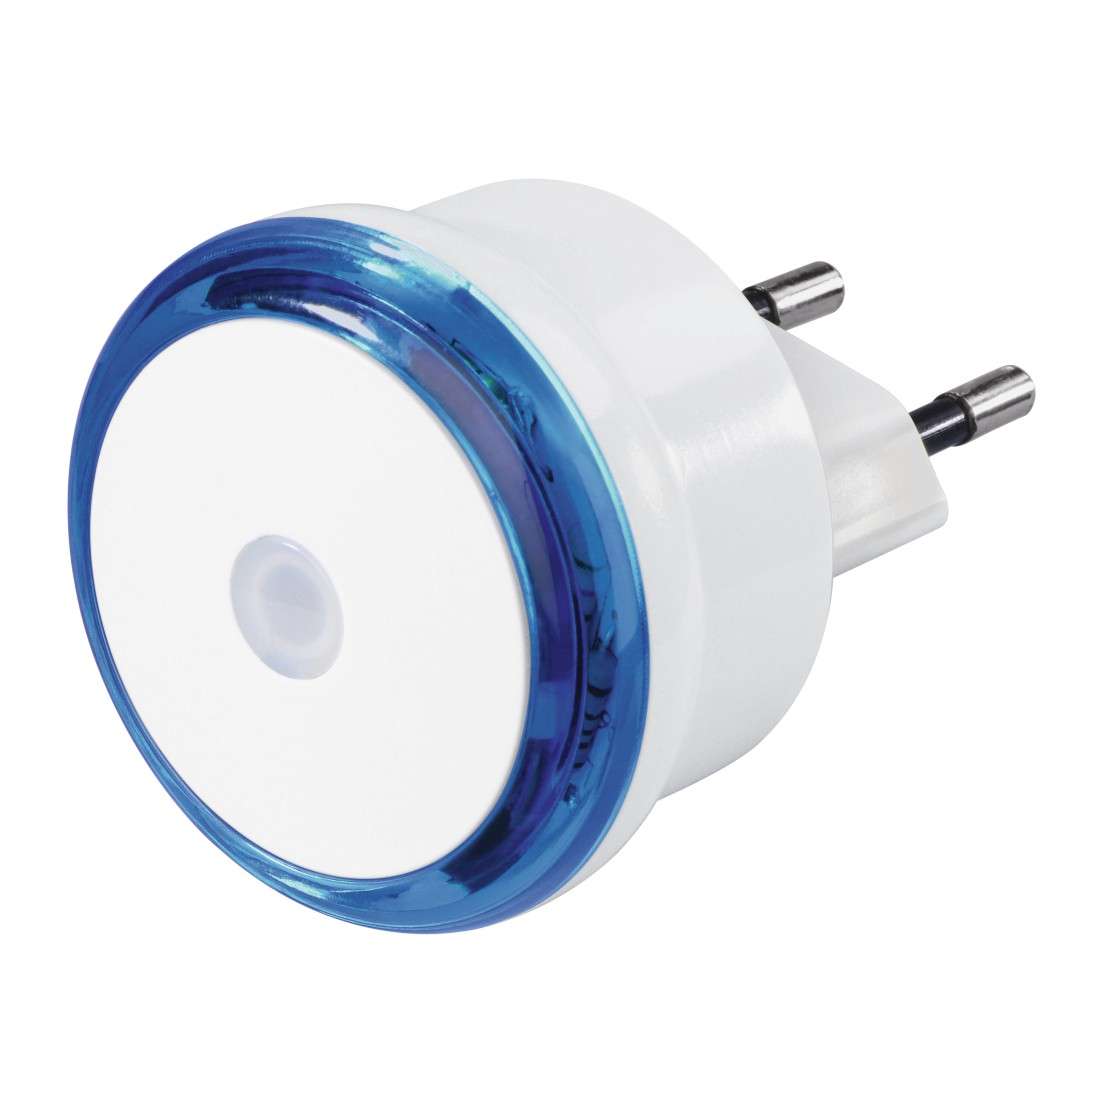 HAMA LED-Nachtlicht Basic mit Stecker, Dämmerungssensor, energiesparend, Blau